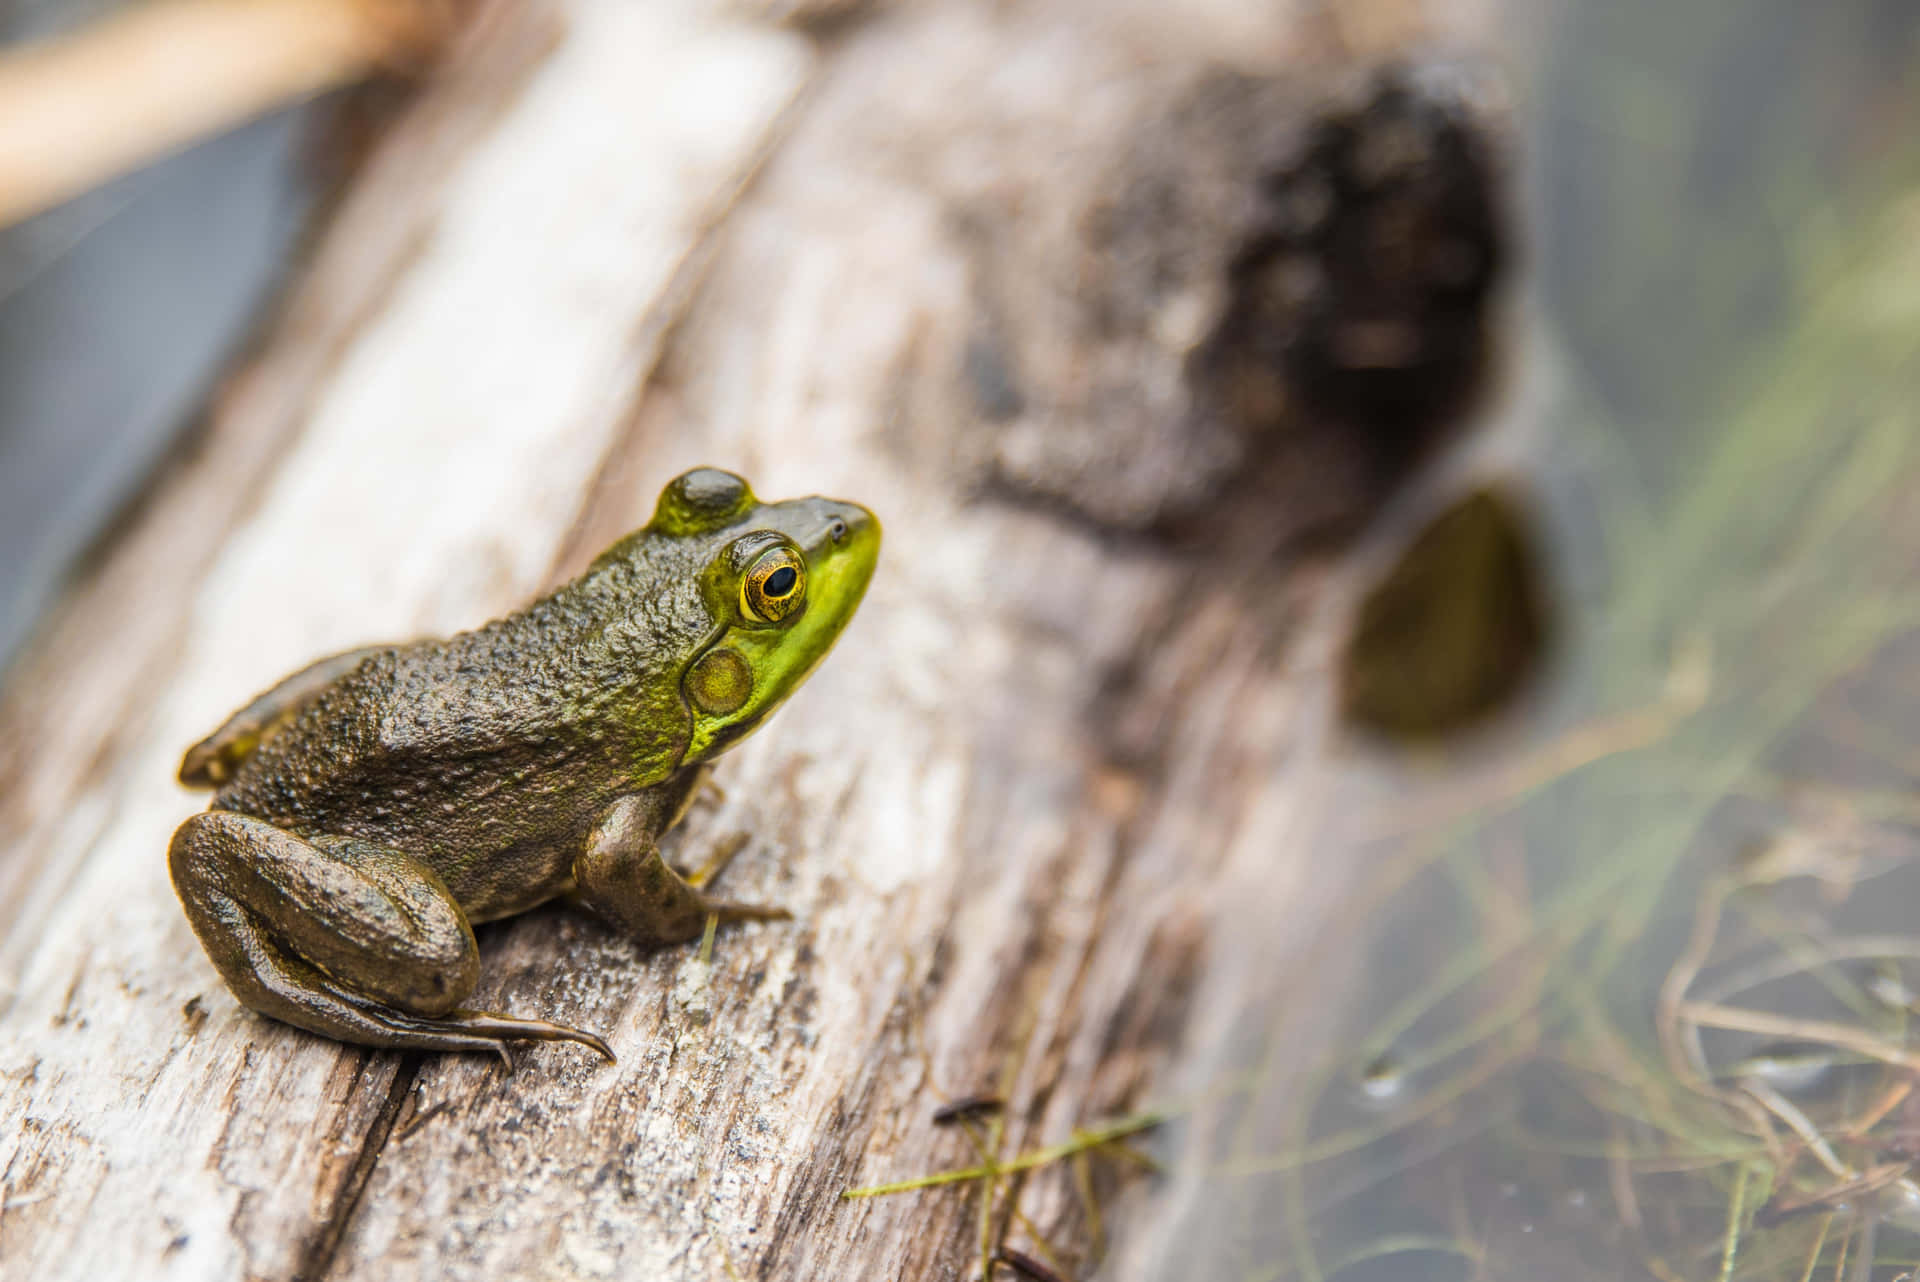 A closeup of a vivid green frog